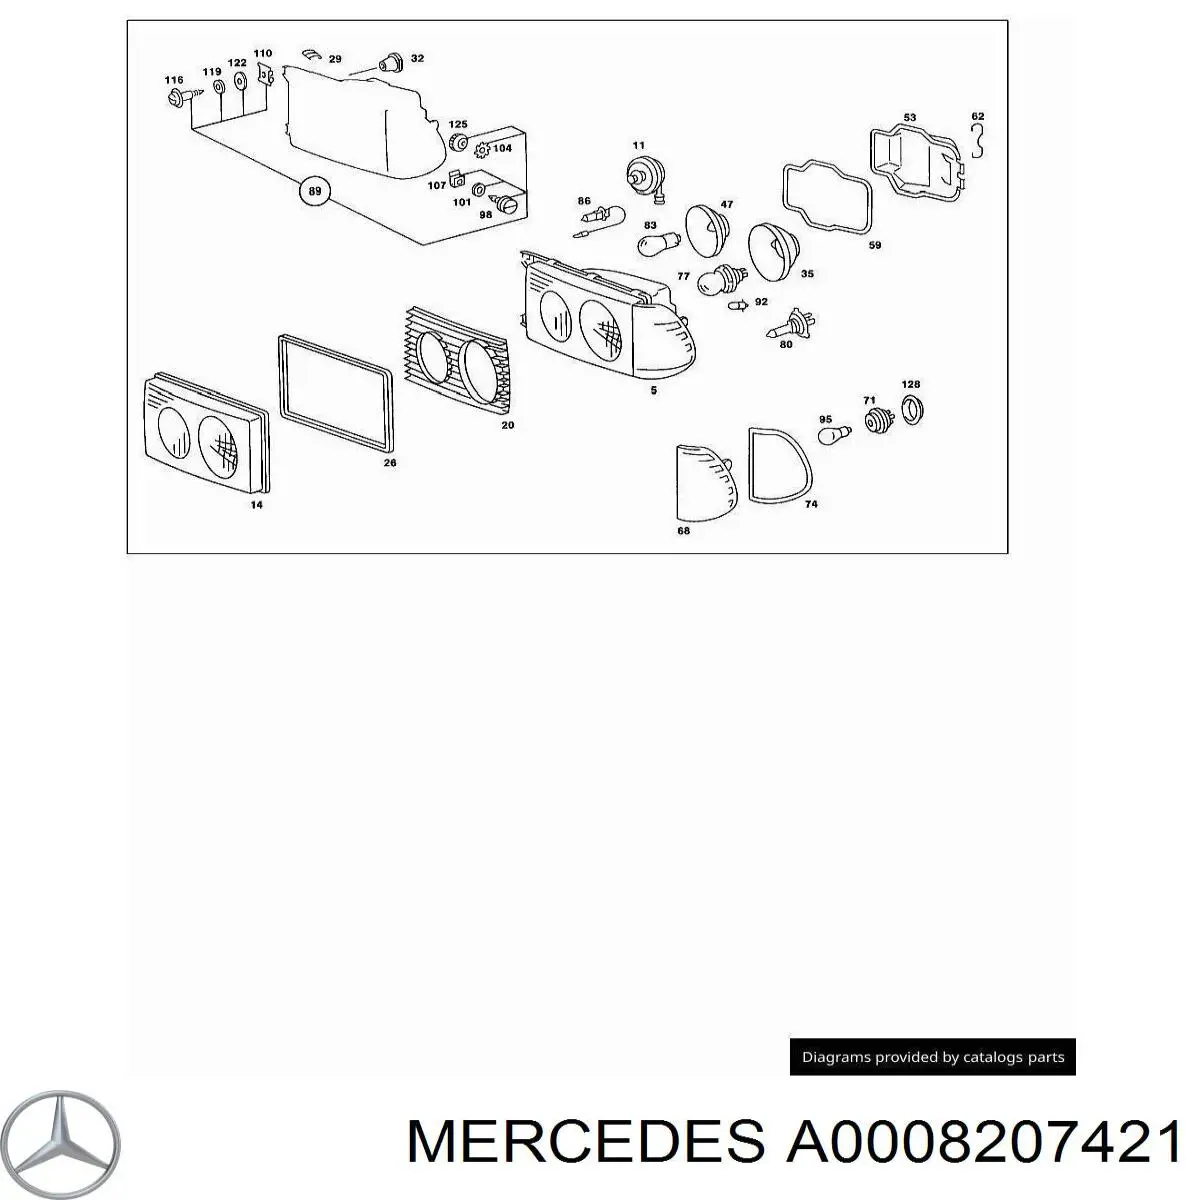 0008207421 Mercedes piloto intermitente derecho